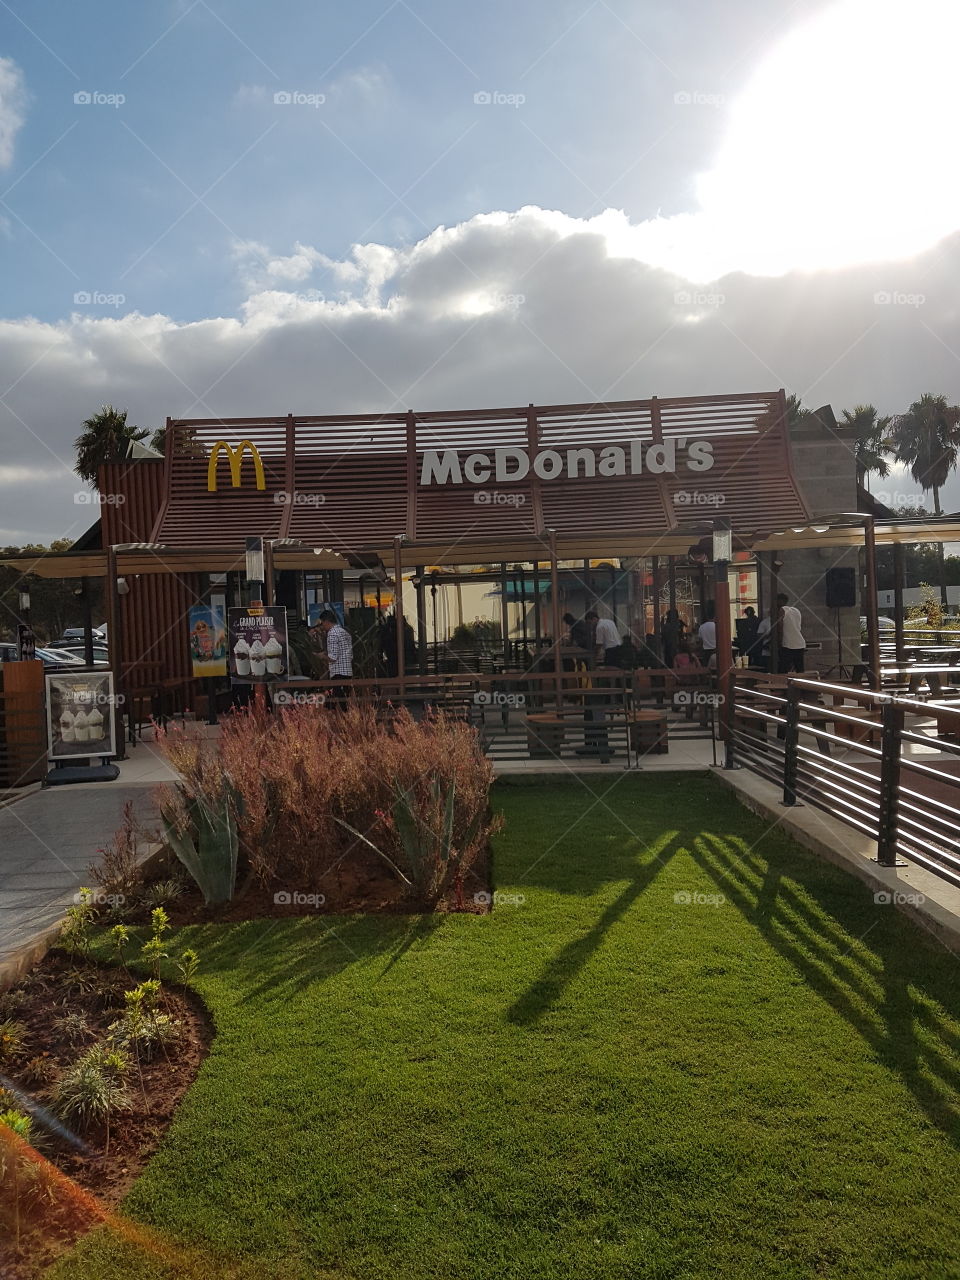 morrocan McDonalds McDonald's car